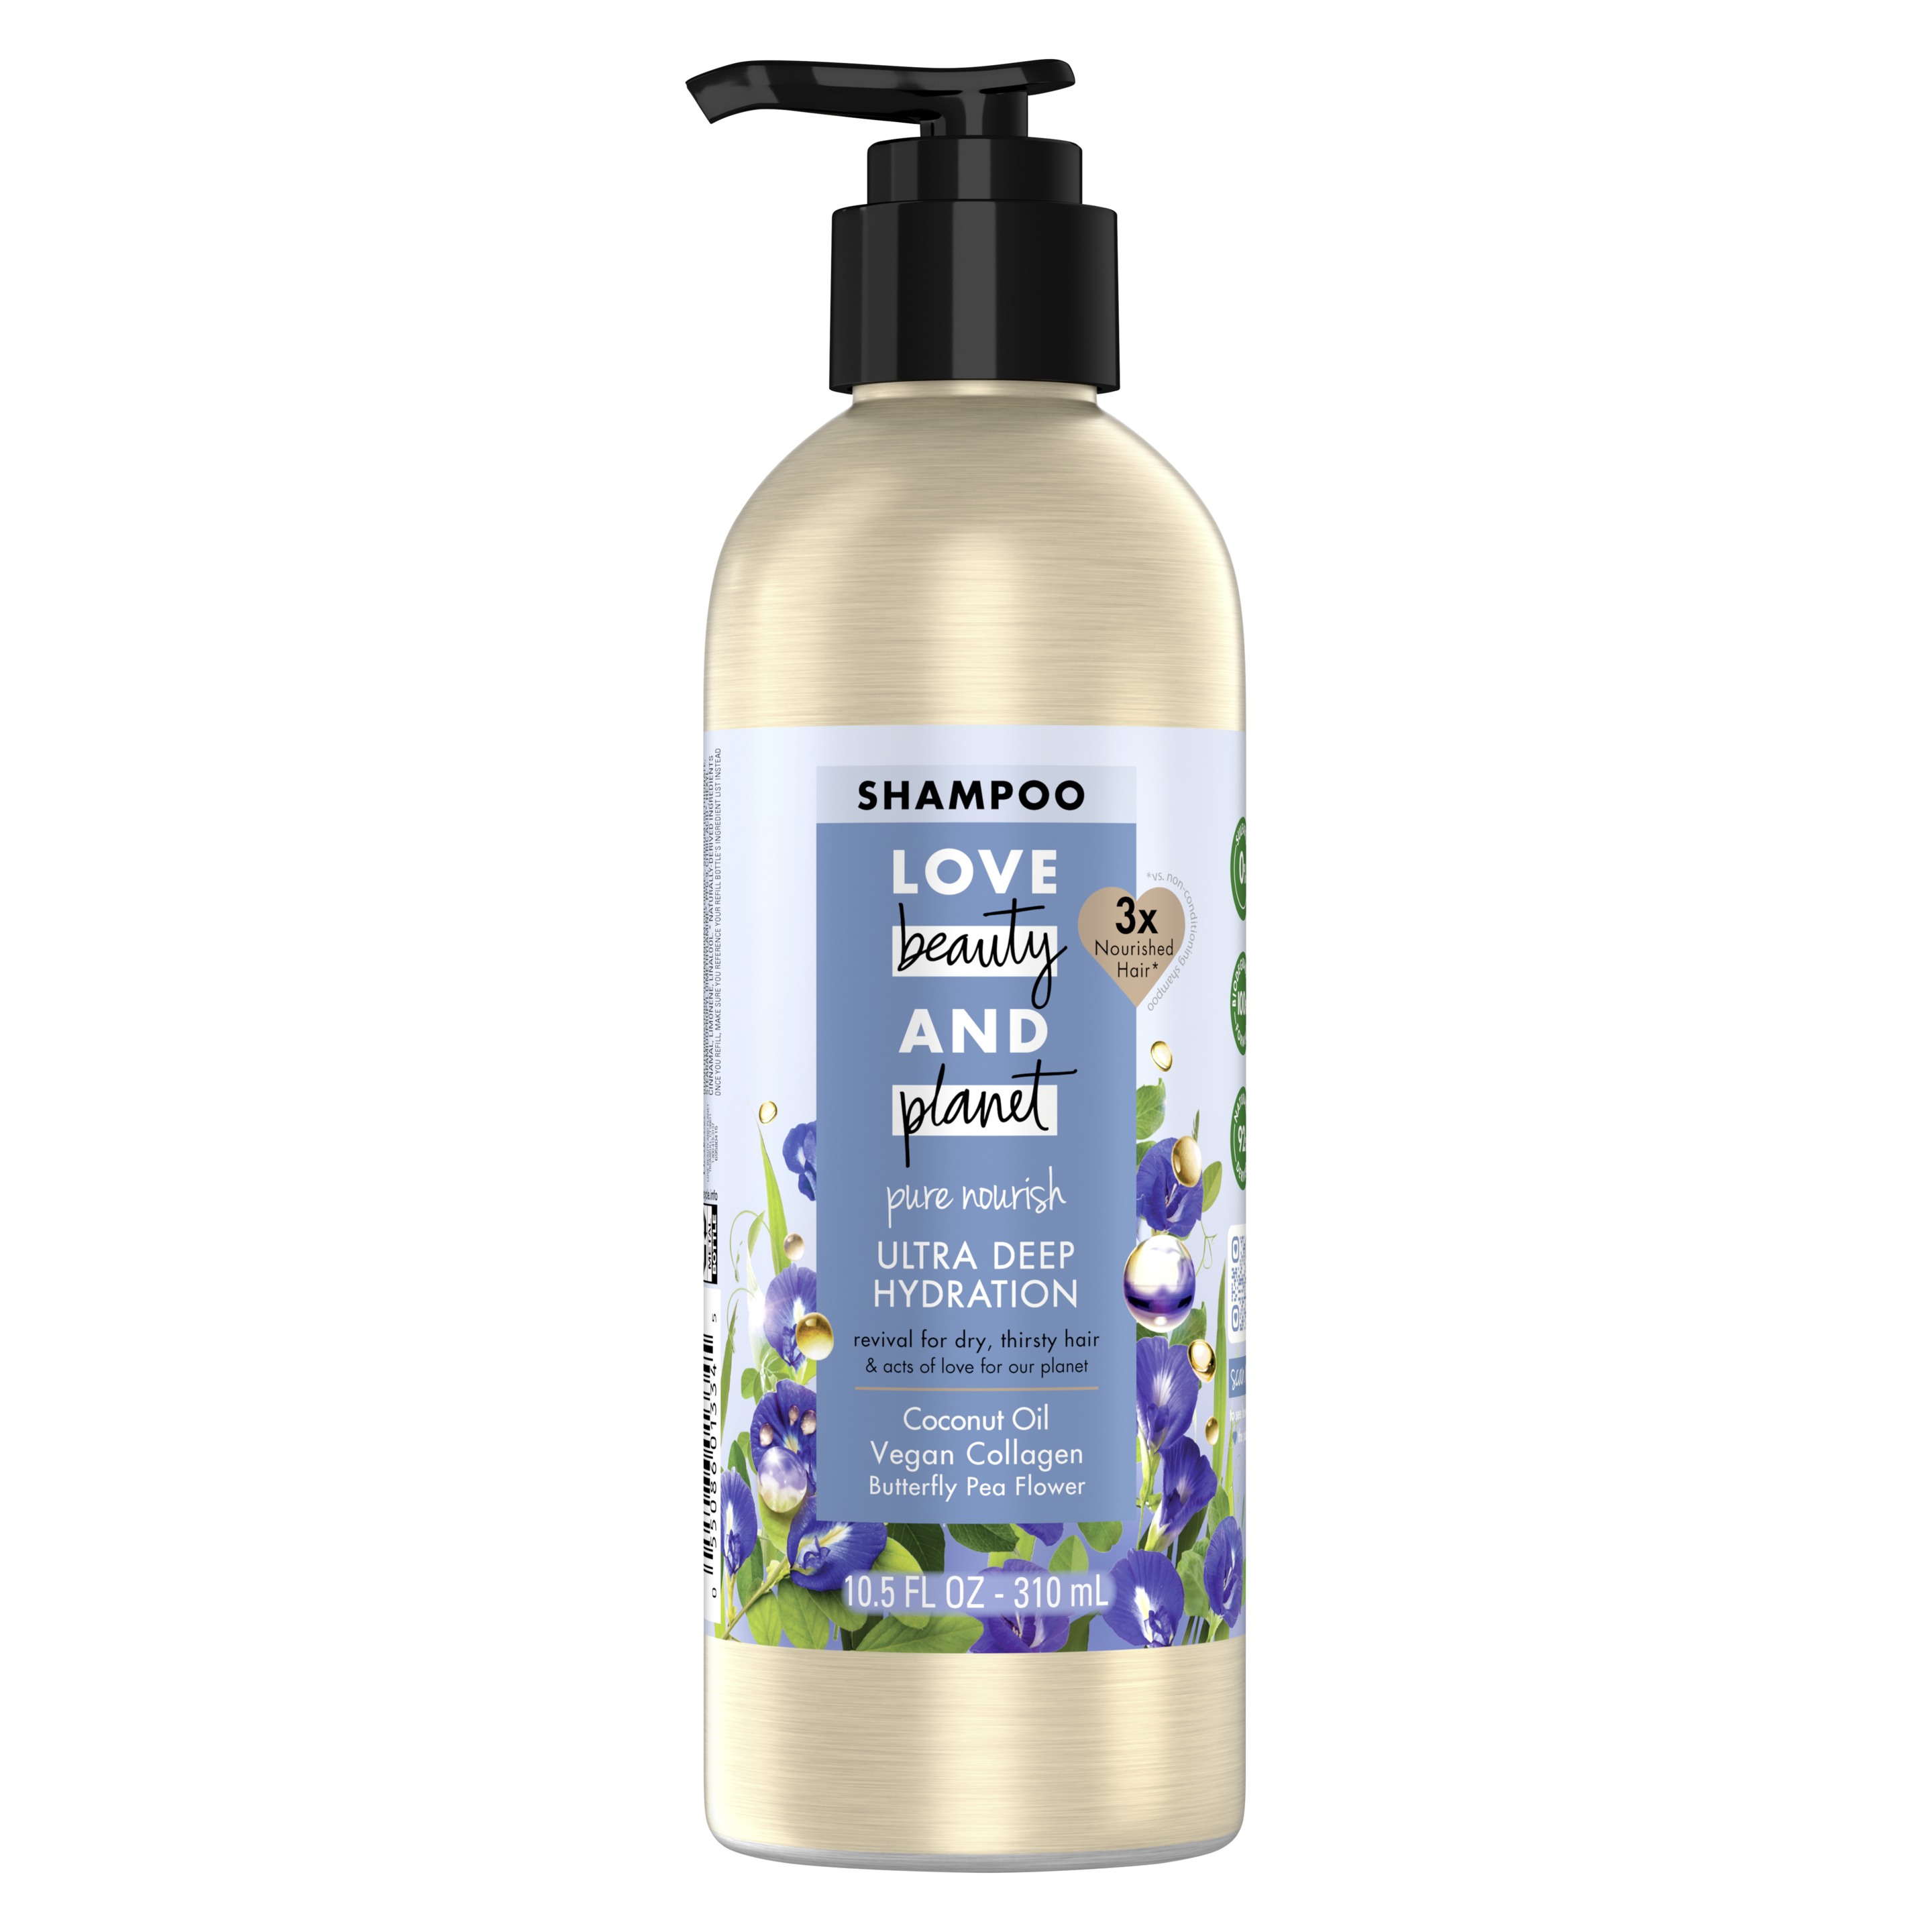 sulfate-free coconut oil & vegan collagen shampoo